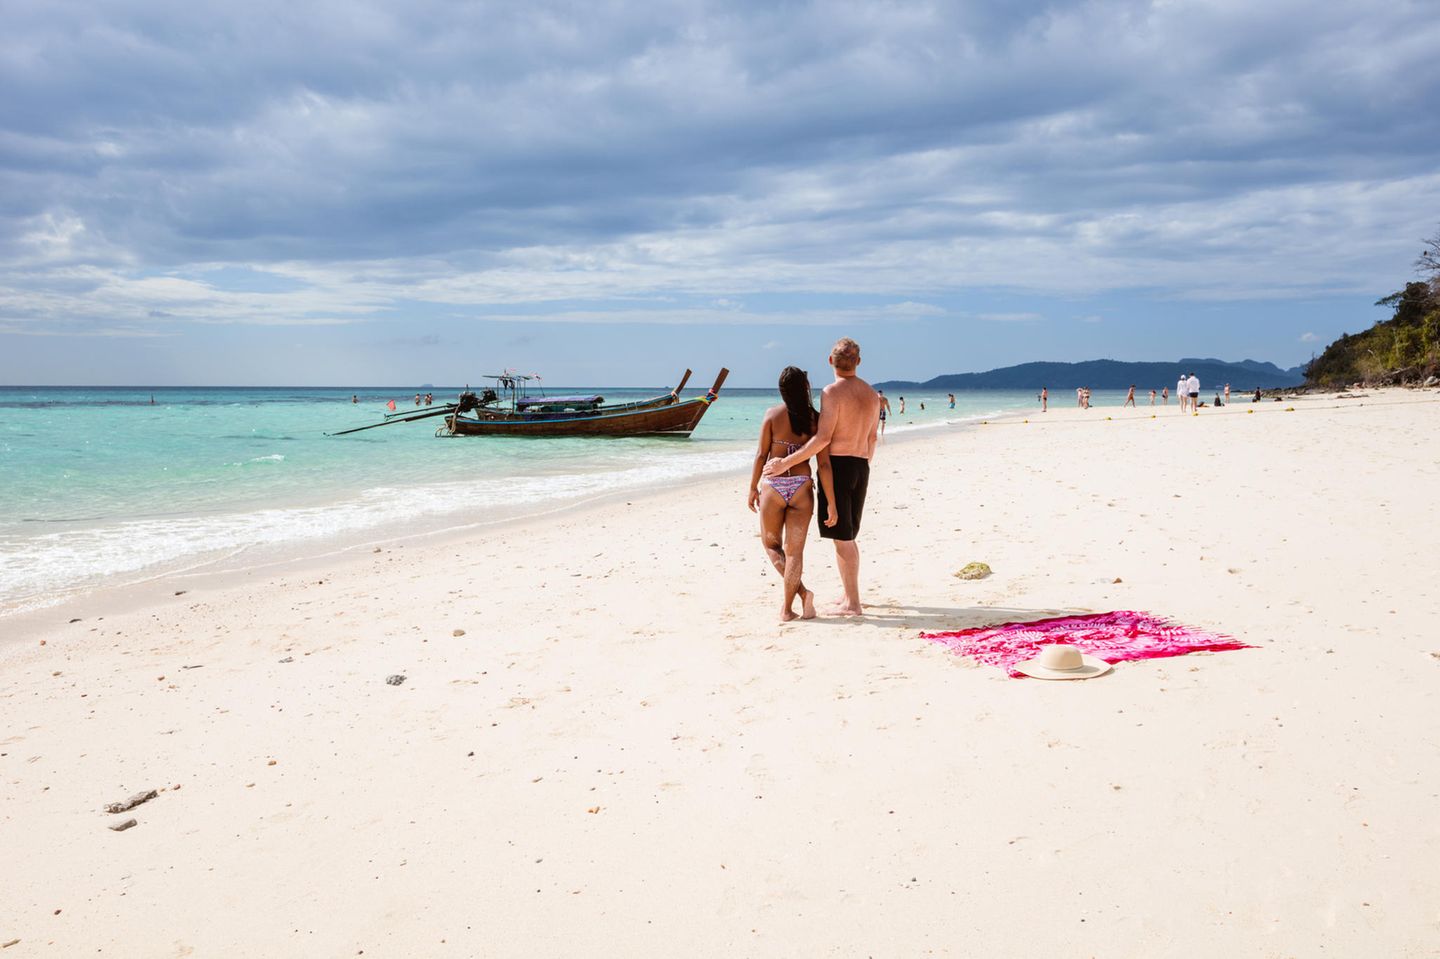 Sextourismus in Thailand - wenn Papa eine Thailänderin heiraten will: Paar am Strand